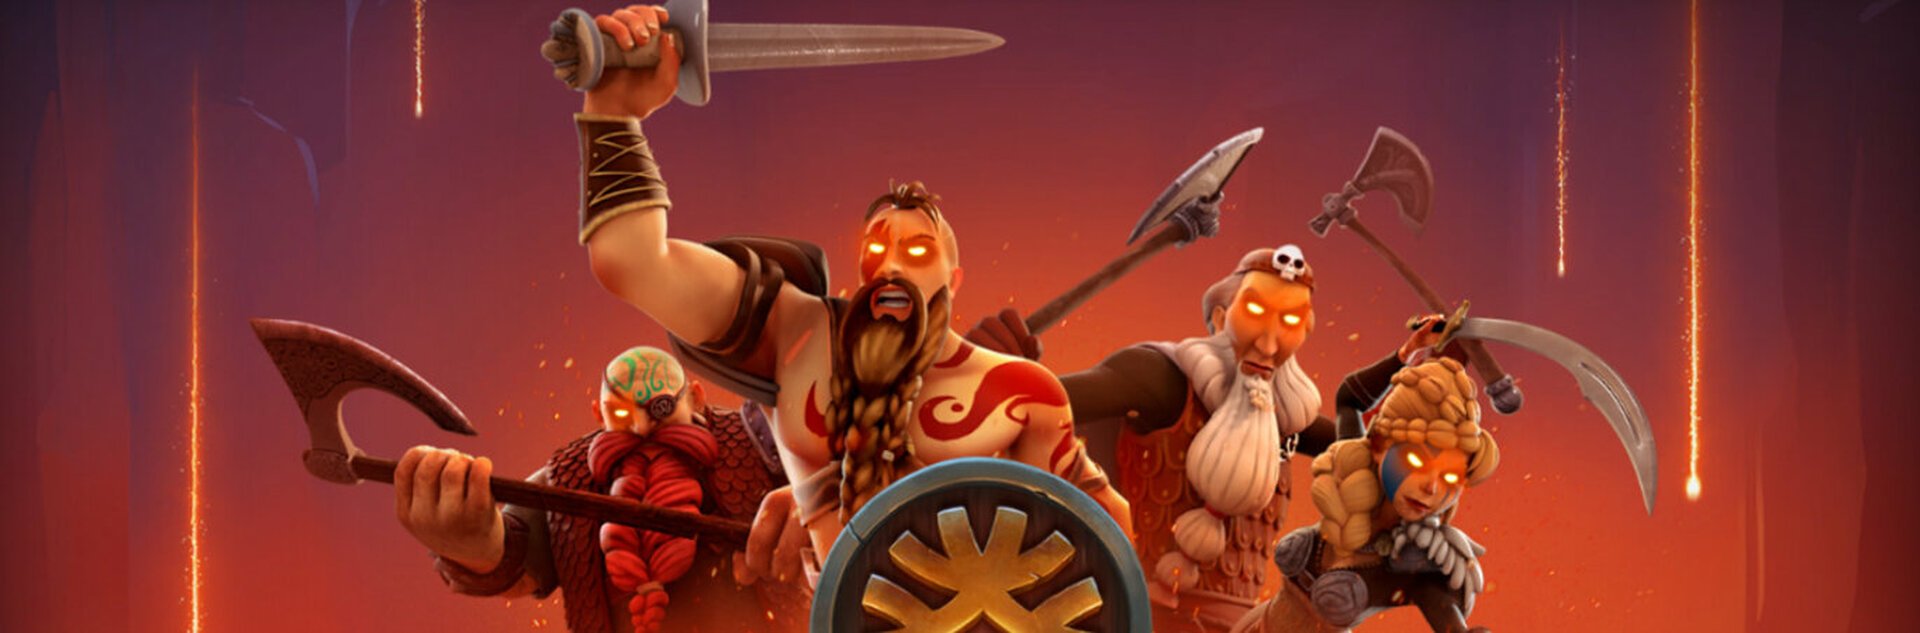 Play Vikings Go Berzerk Reloaded Free Slot